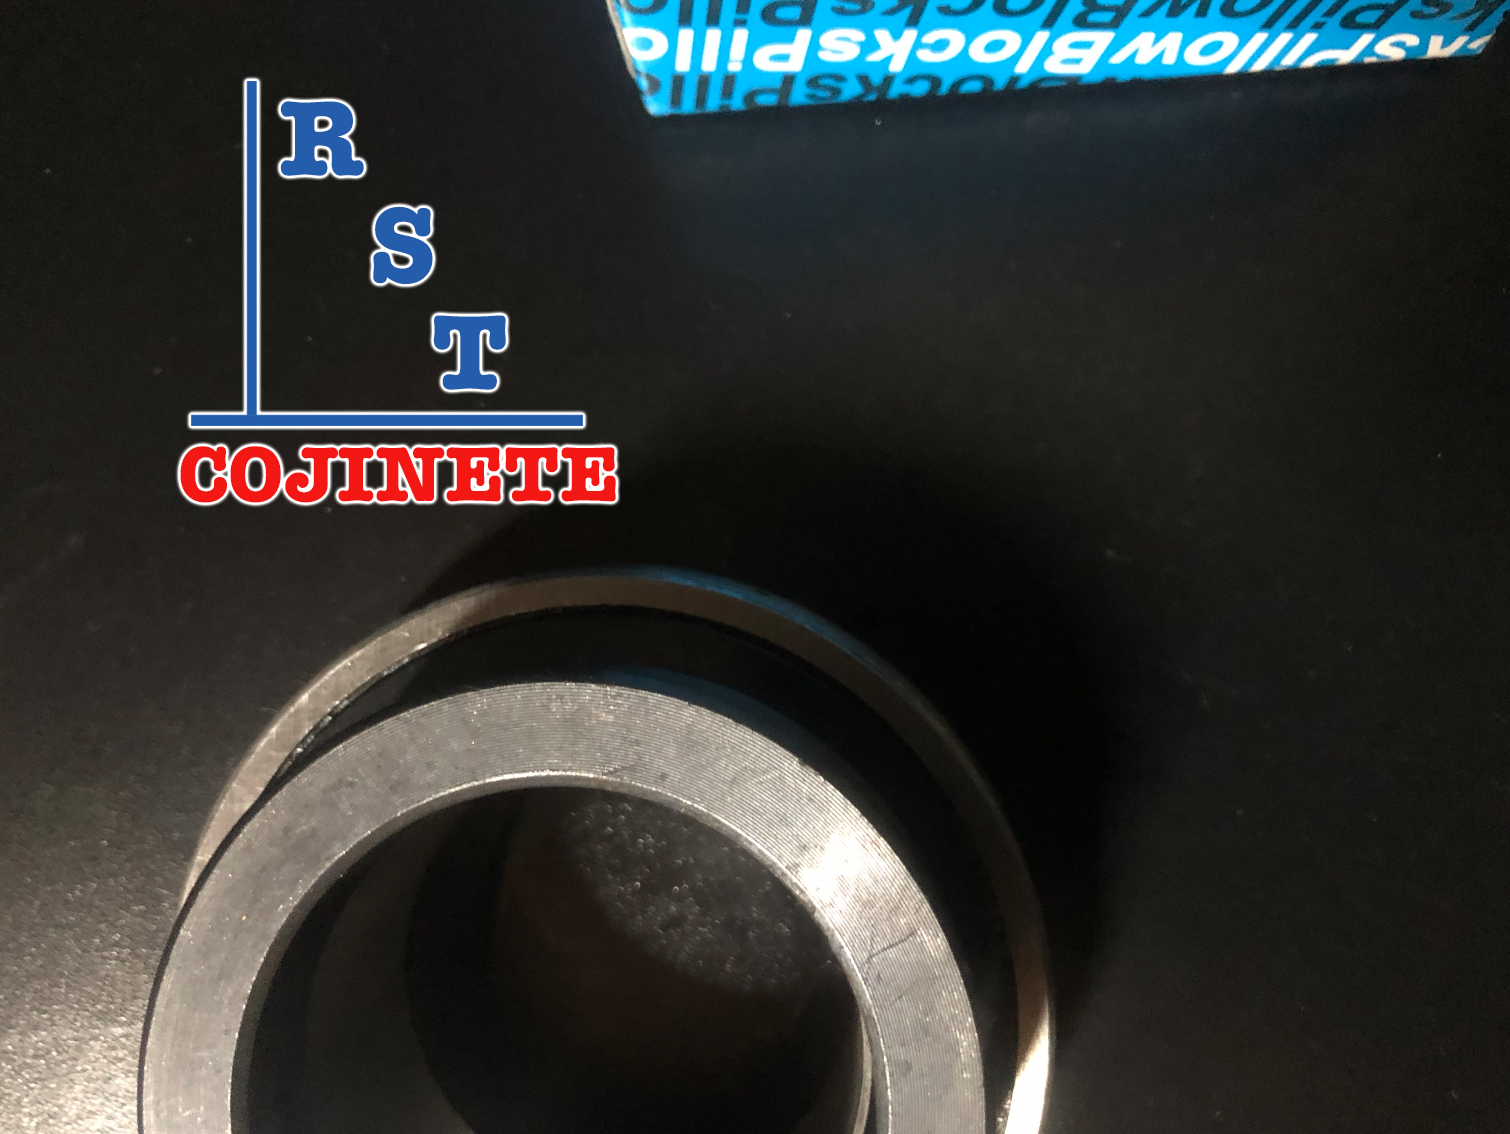 Rodamiento SA205-14 | Cojinete para chumaceras con eje de ⅞" con respaldo plano y anillo excéntrico